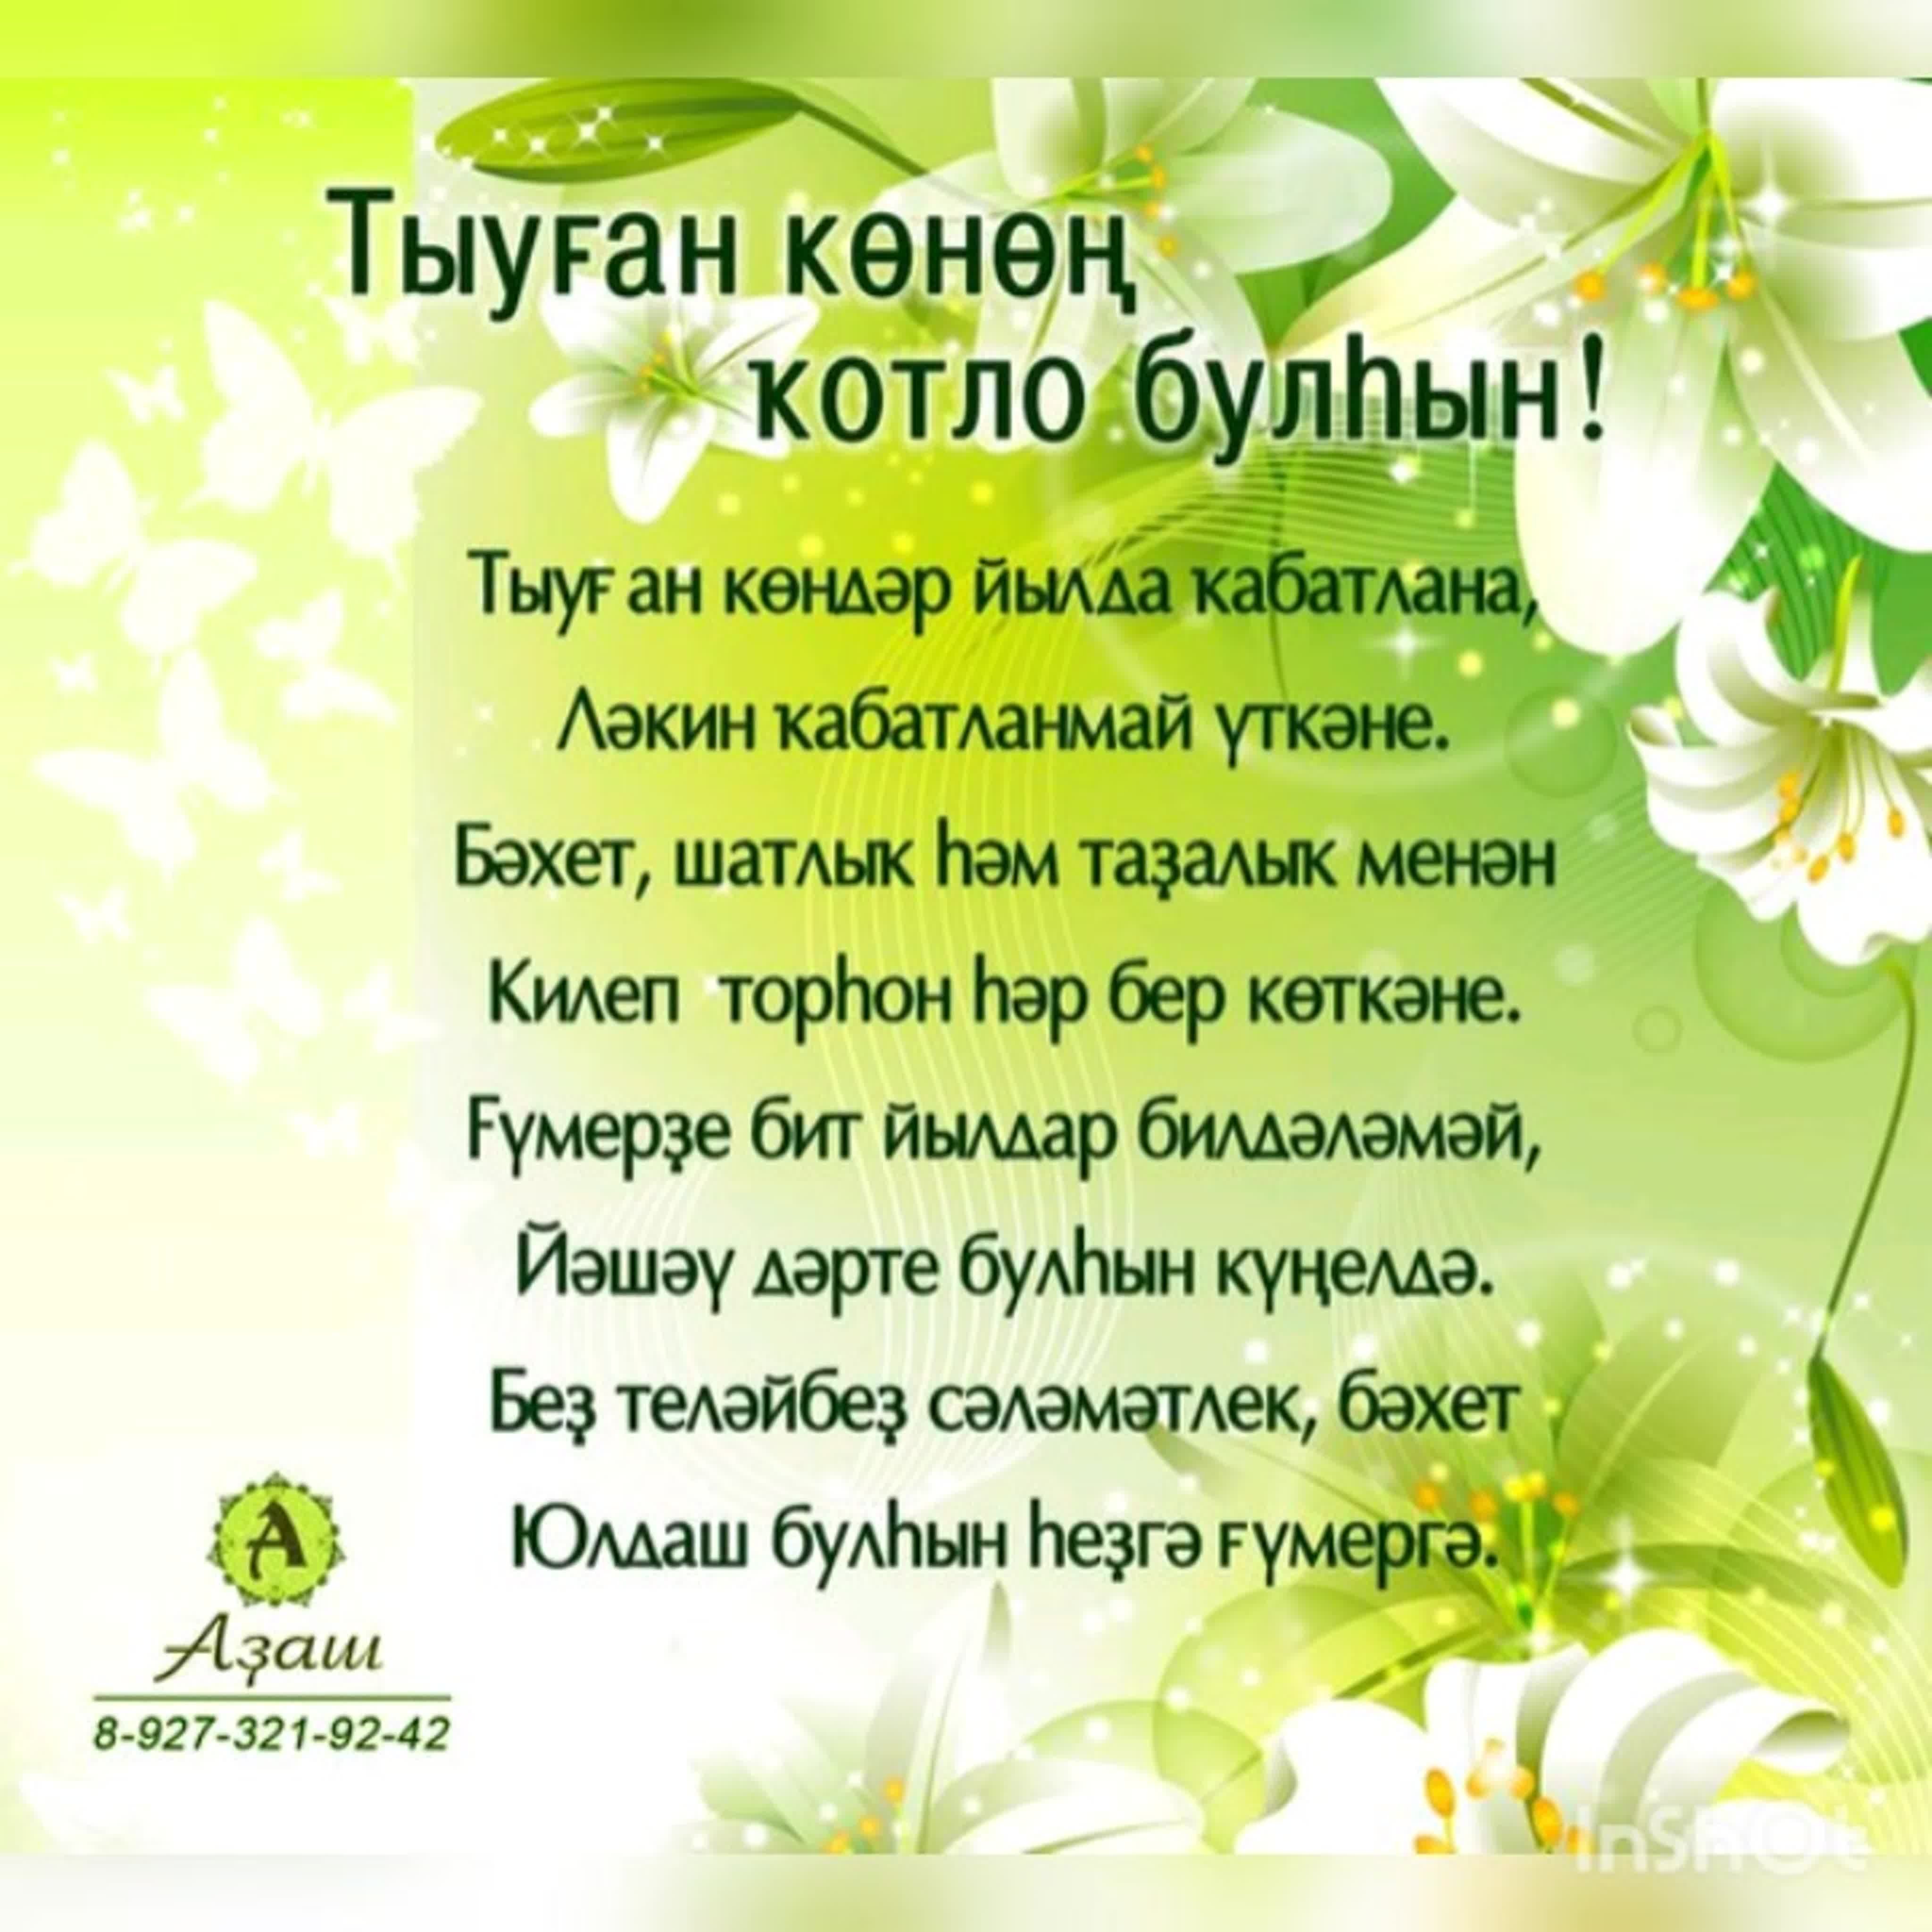 Стало известно, какие события пройдут в республике в День башкирского языка